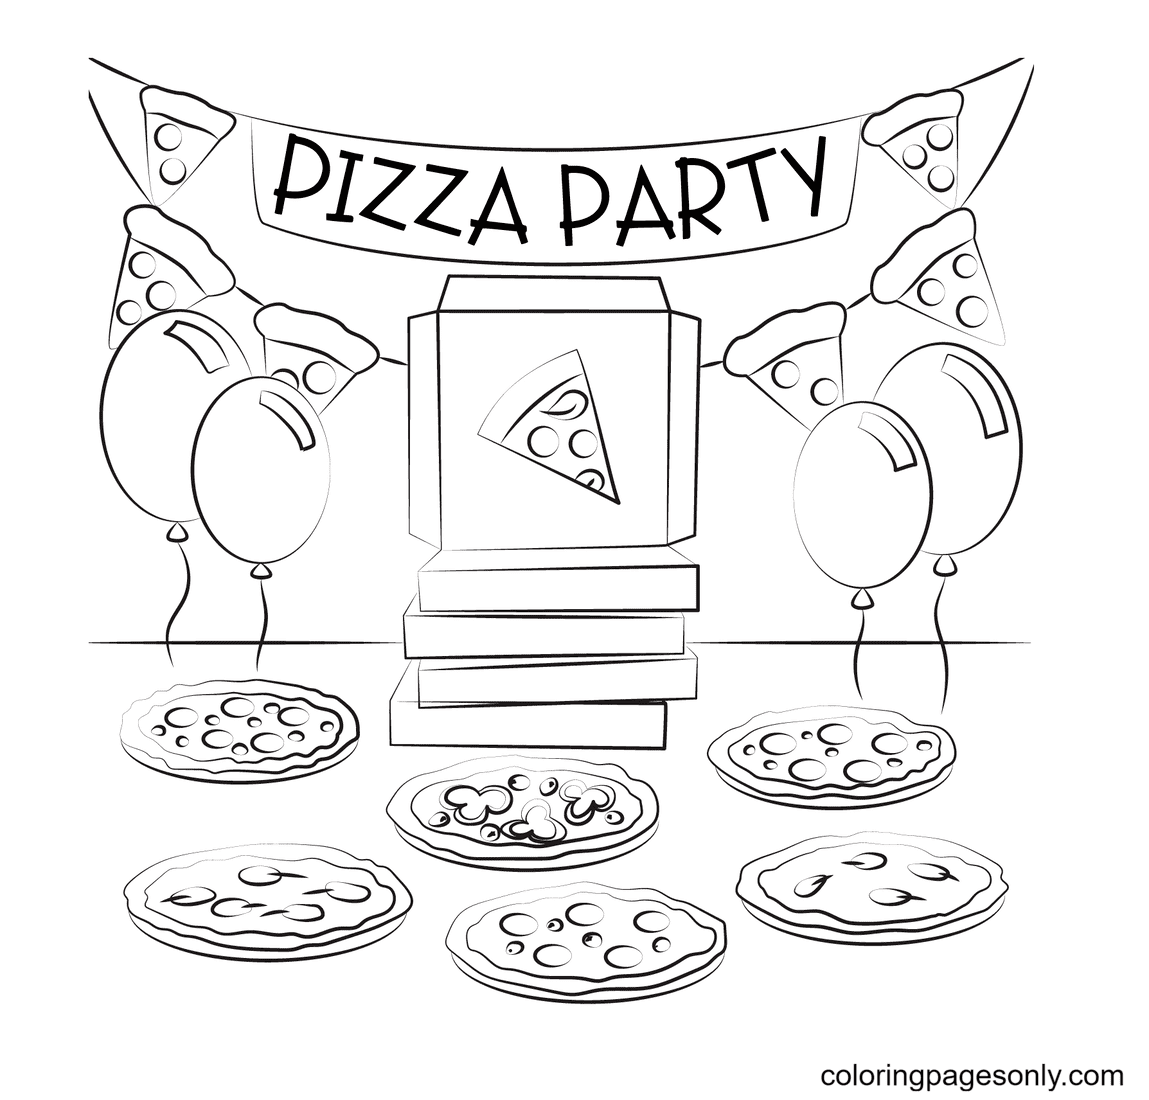 Pagina da colorare di pizza party